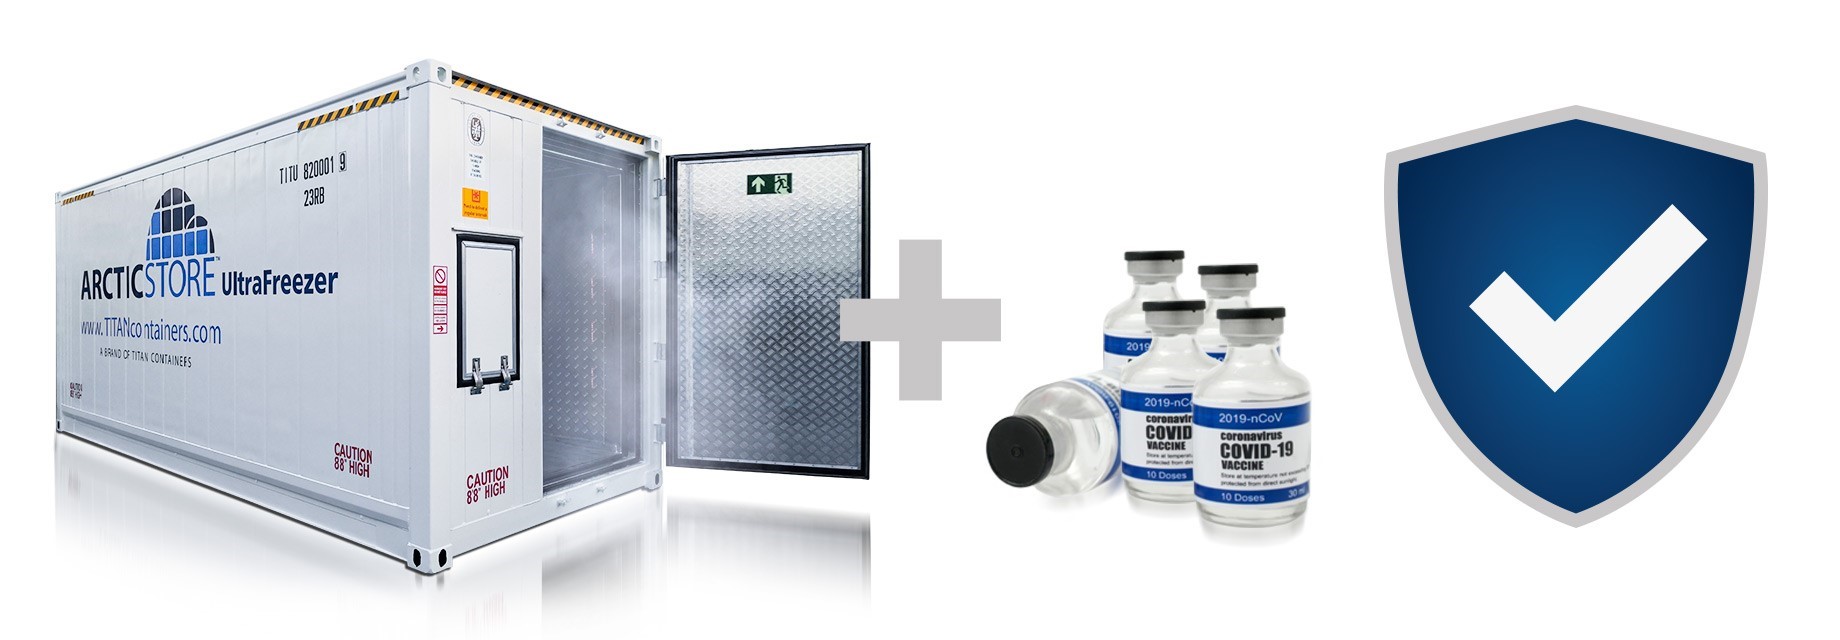 Pfizer-Biontech Vaccine Storage Solutions